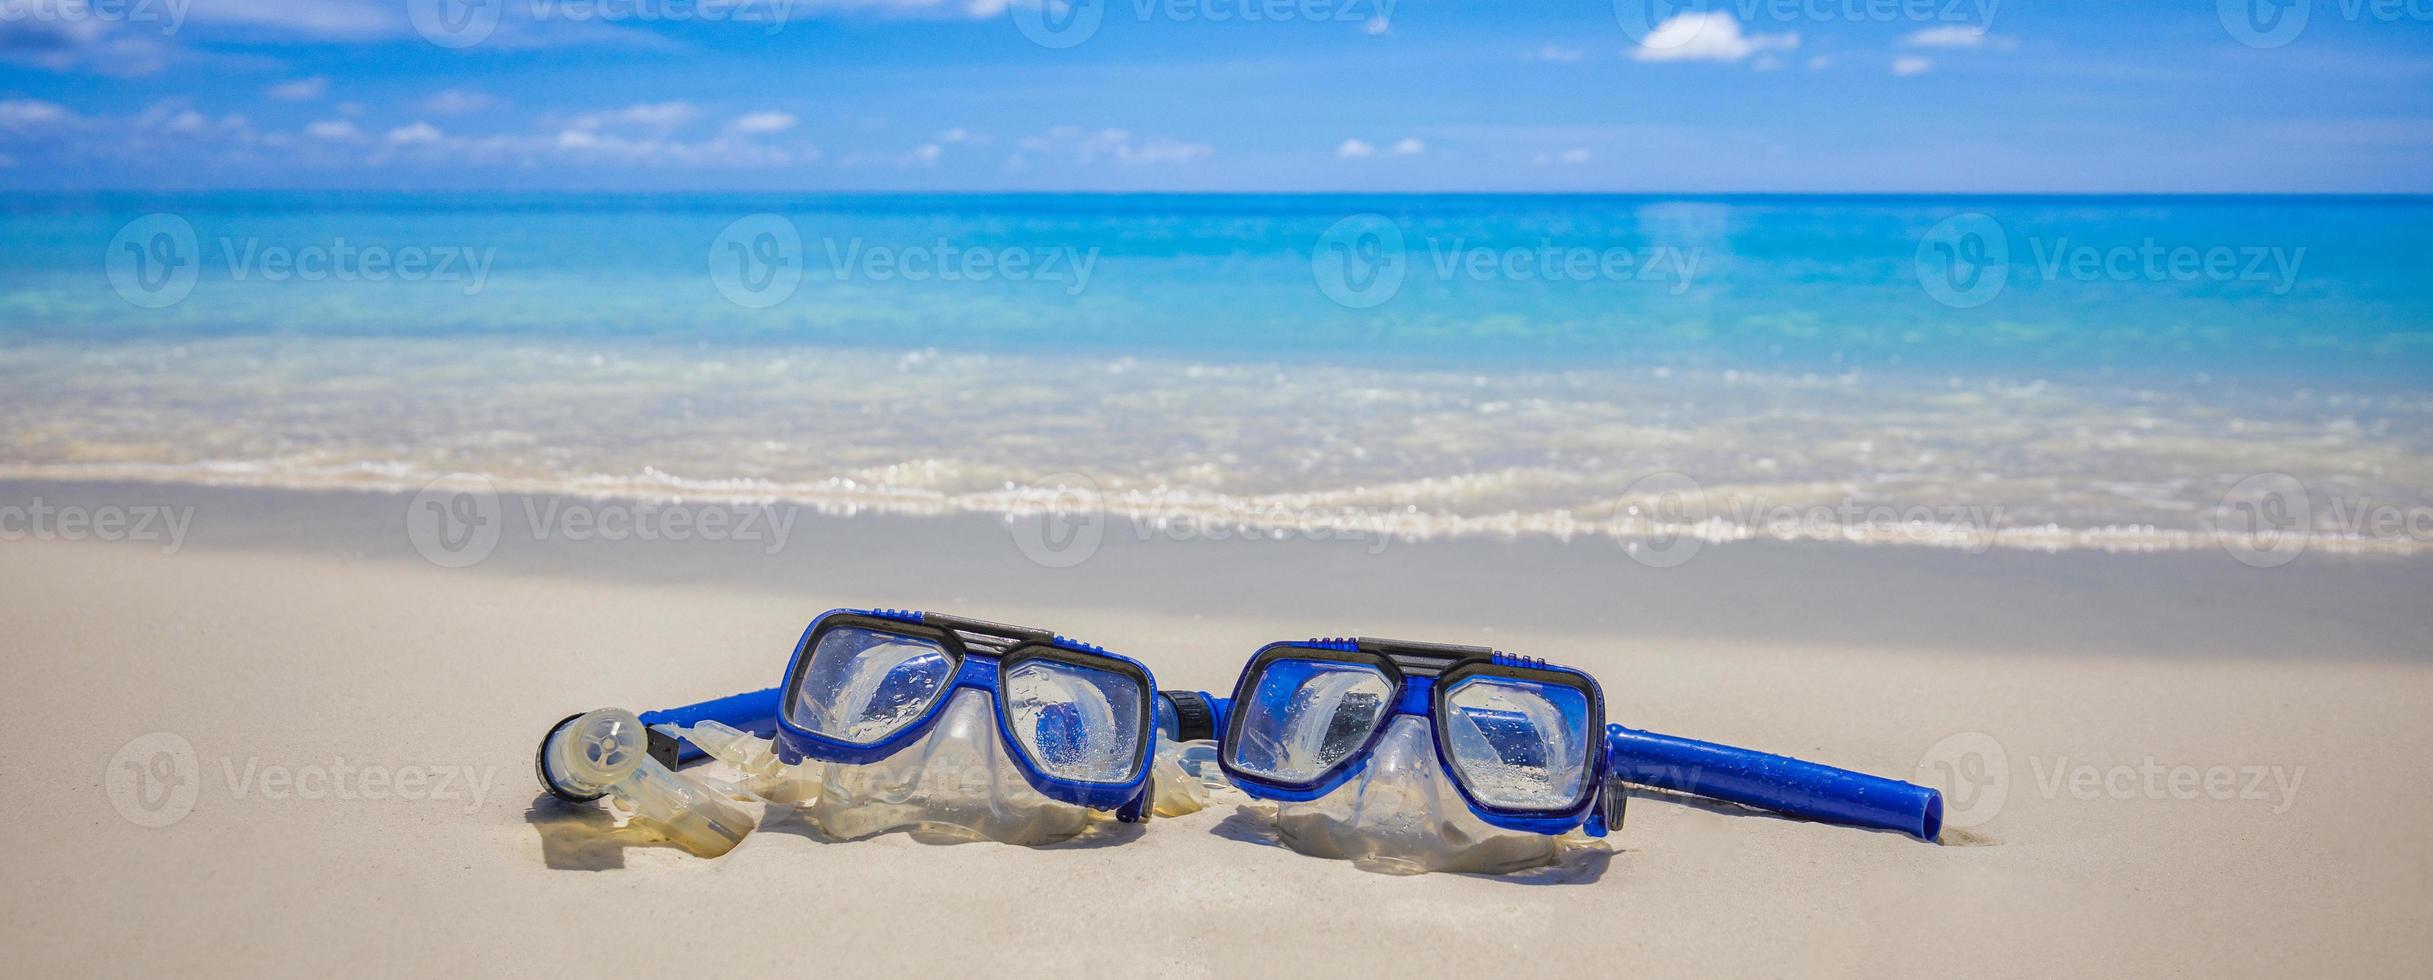 esporte de verão, praia atividade praia banner recreativo. óculos de mergulho equipamento de snorkel na areia branca perto das ondas do mar. férias panorâmicas e fundo de viagens recreativas. diversão liberdade aventura estilo de vida foto